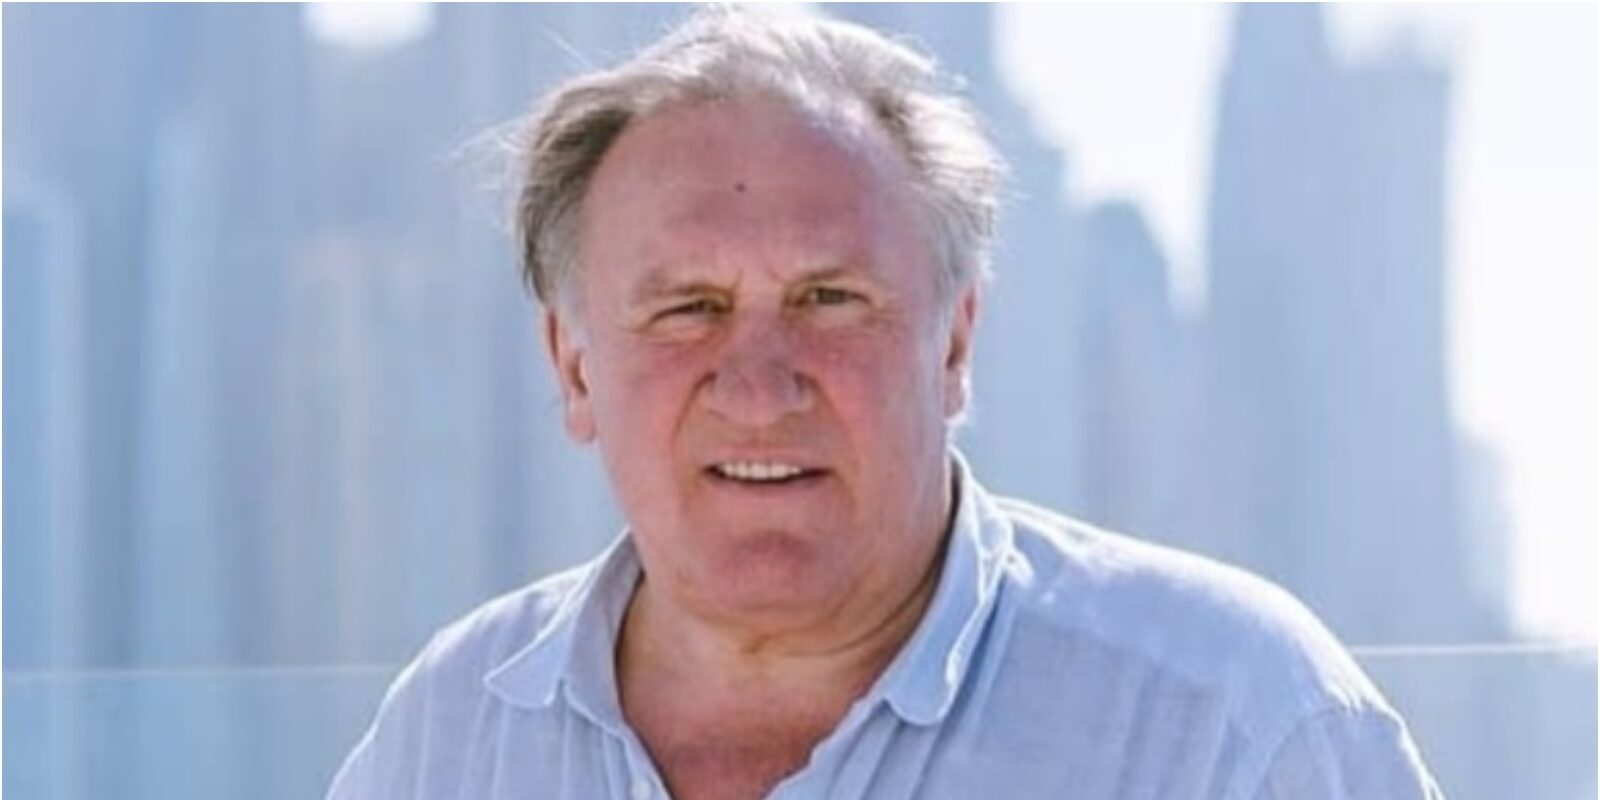 Ator Gérard Depardieu é acusado de assédio sexual por 13 mulheres, diz site